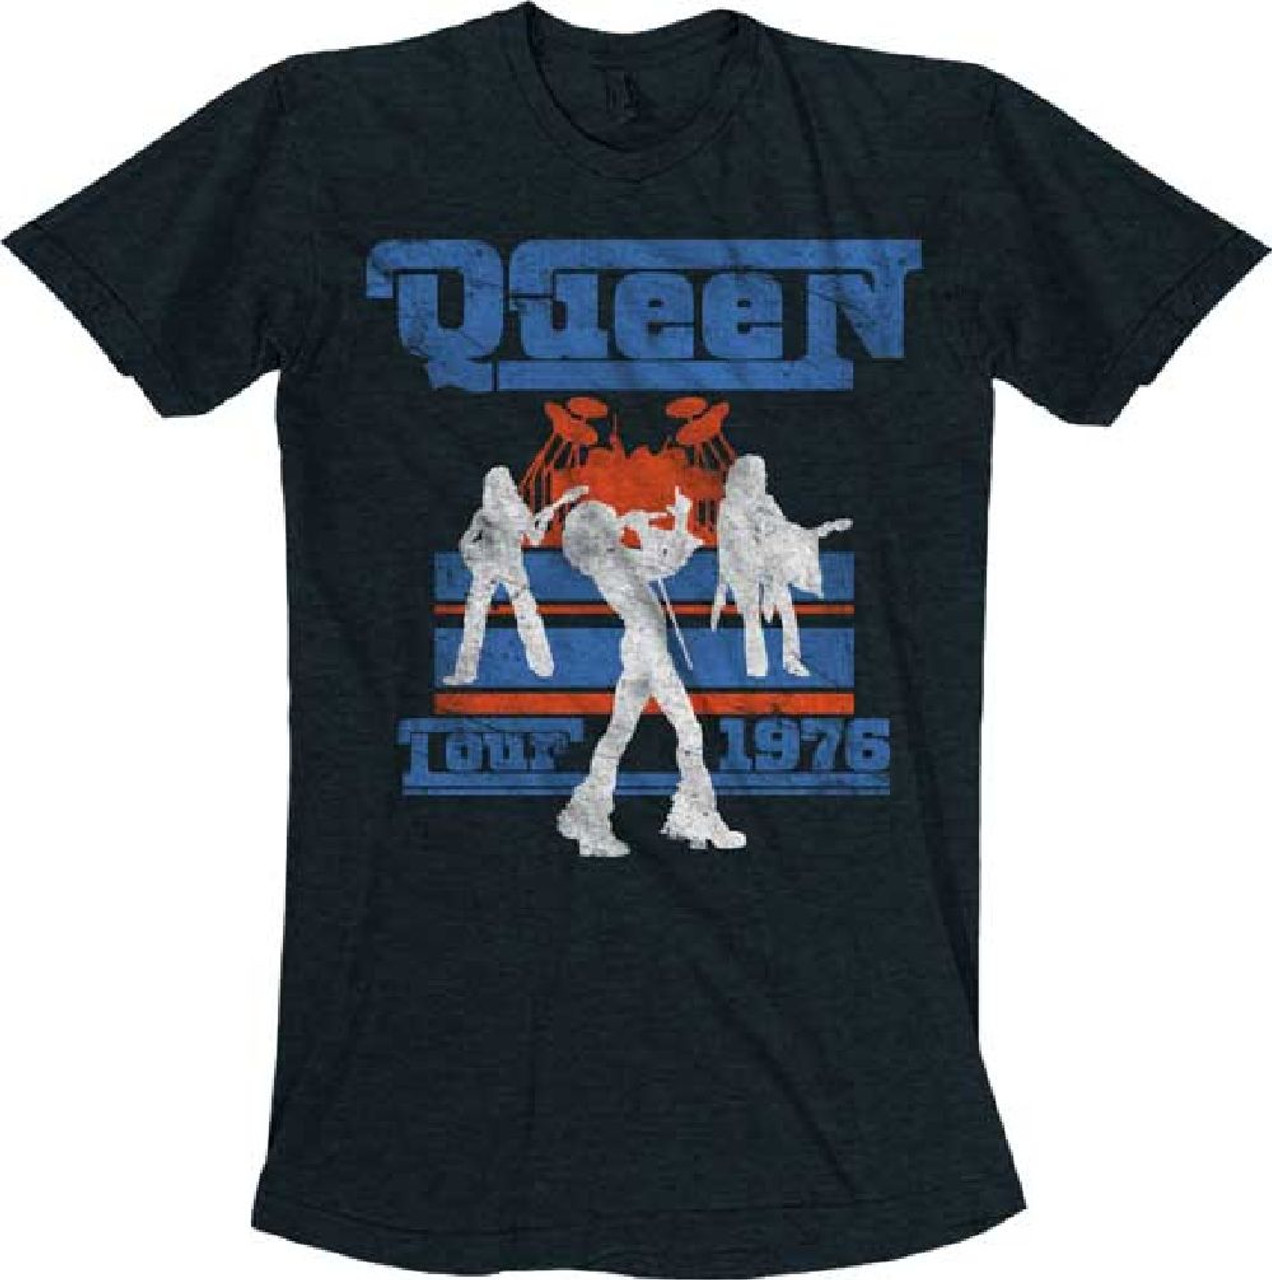 Queen Tour 1976 Menâs Black Vintage Concert T-shirt